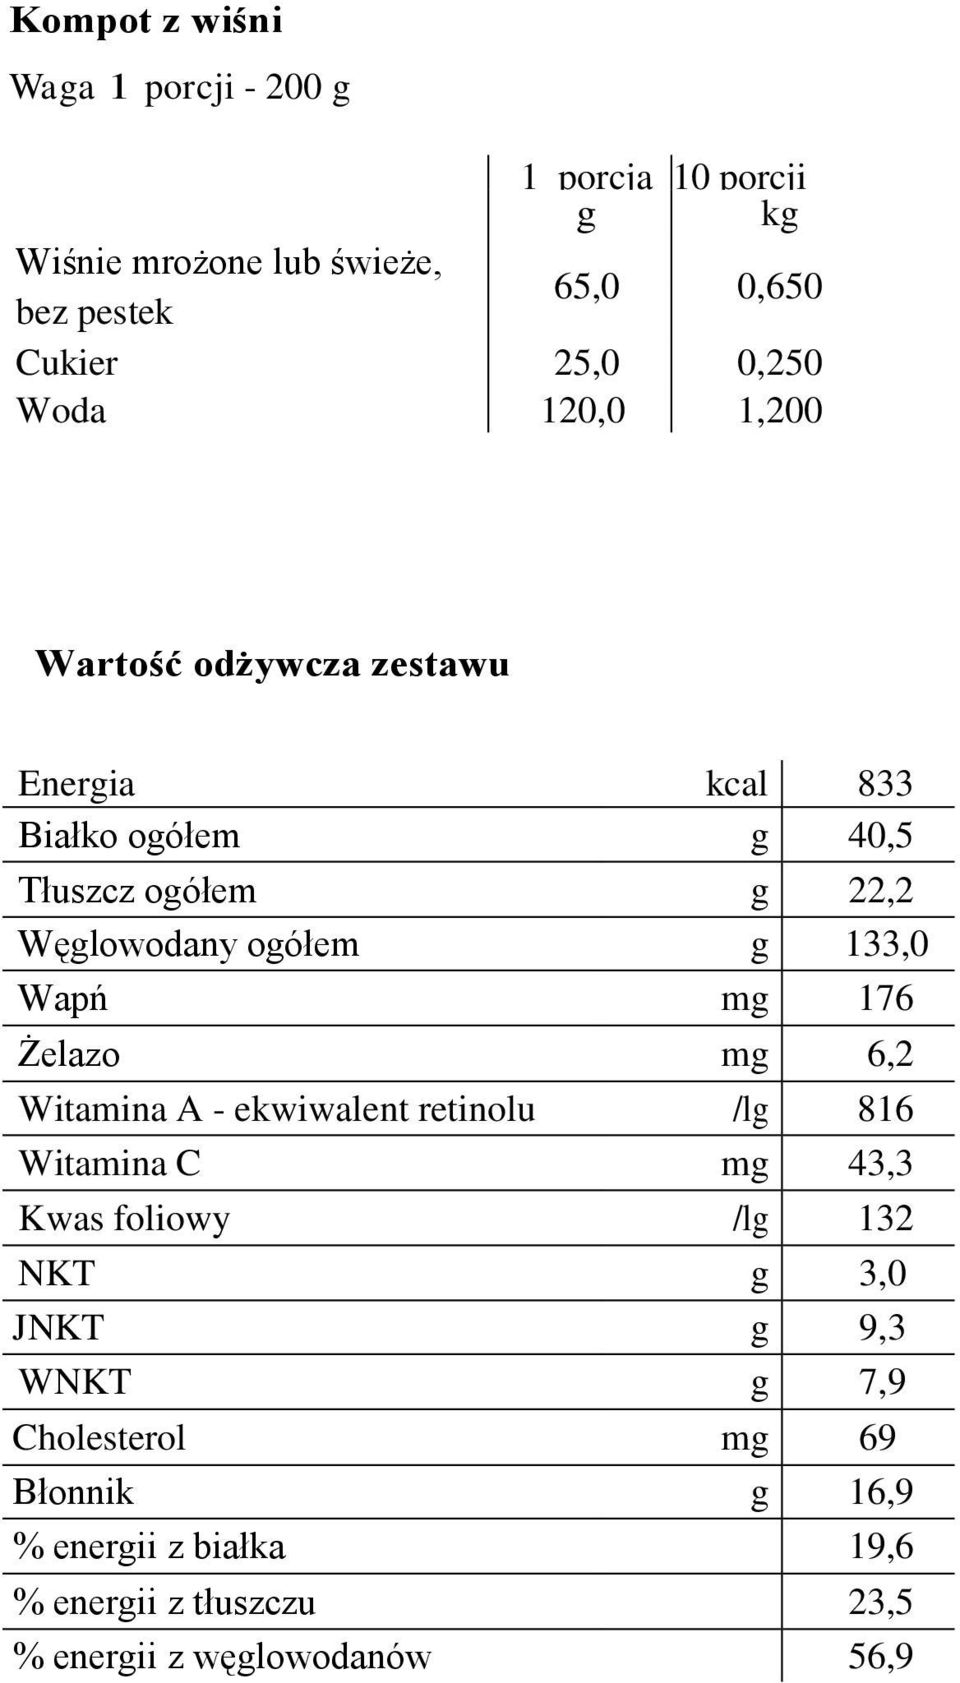 133,0 Wapń mg 176 Żelazo mg 6,2 Witamina A - ekwiwalent retinolu /lg 816 Witamina C mg 43,3 Kwas foliowy /lg 132 NKT g 3,0